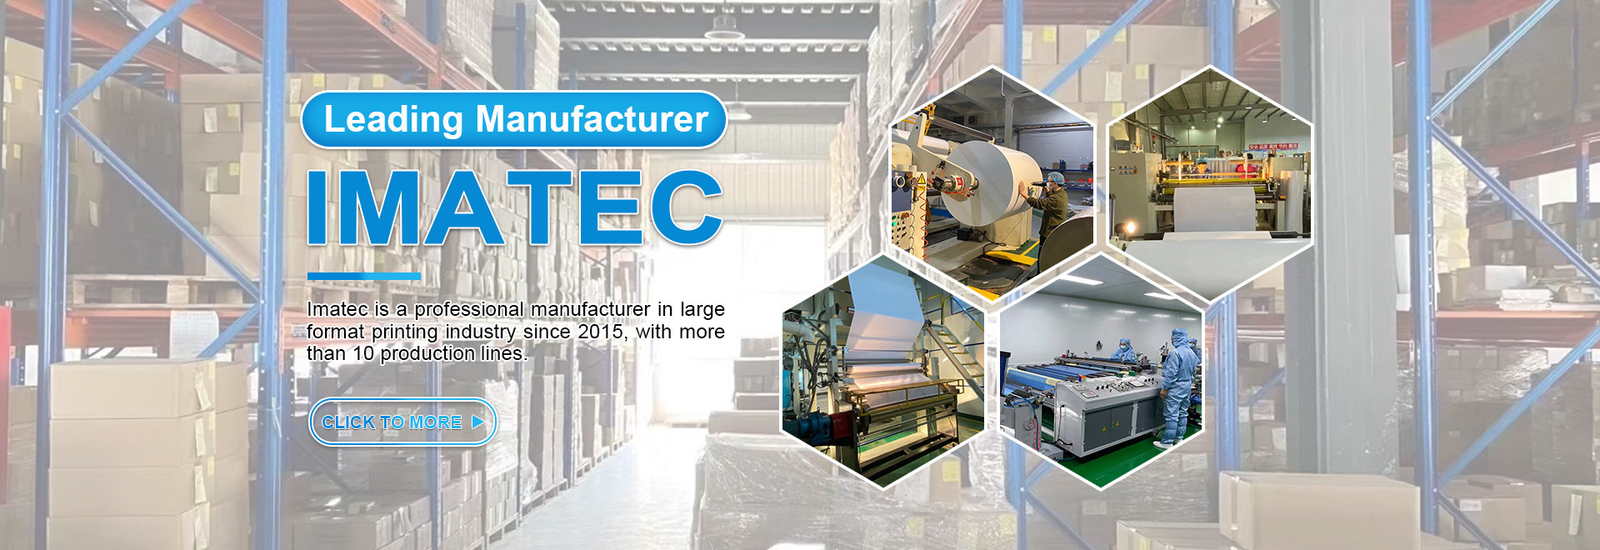 Imatec Imaging Co., Ltd. cadena de producción del fabricante